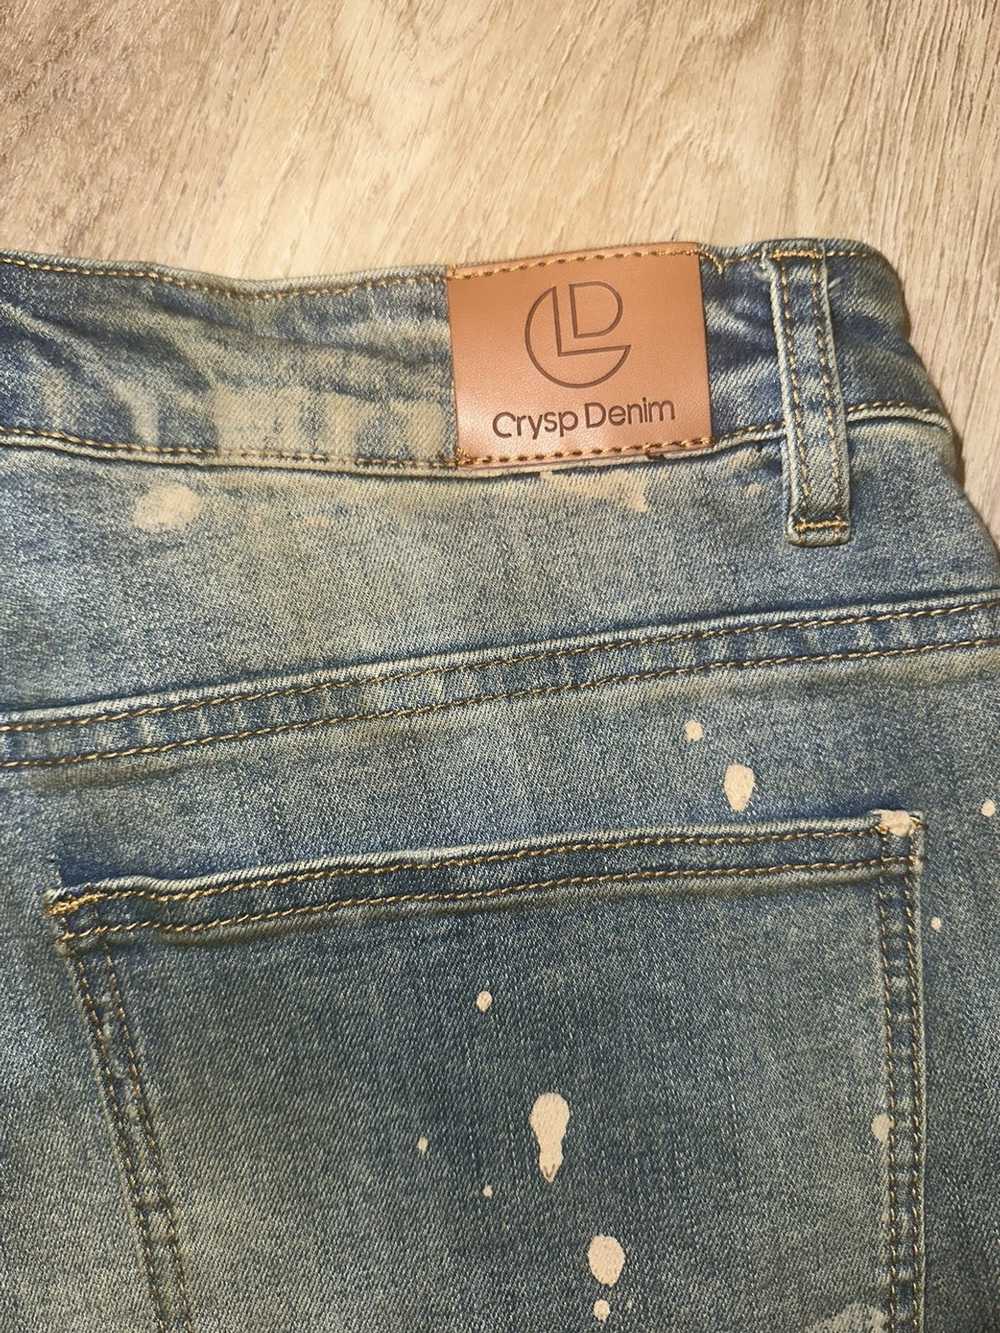 Vintage Denim jeans - image 6